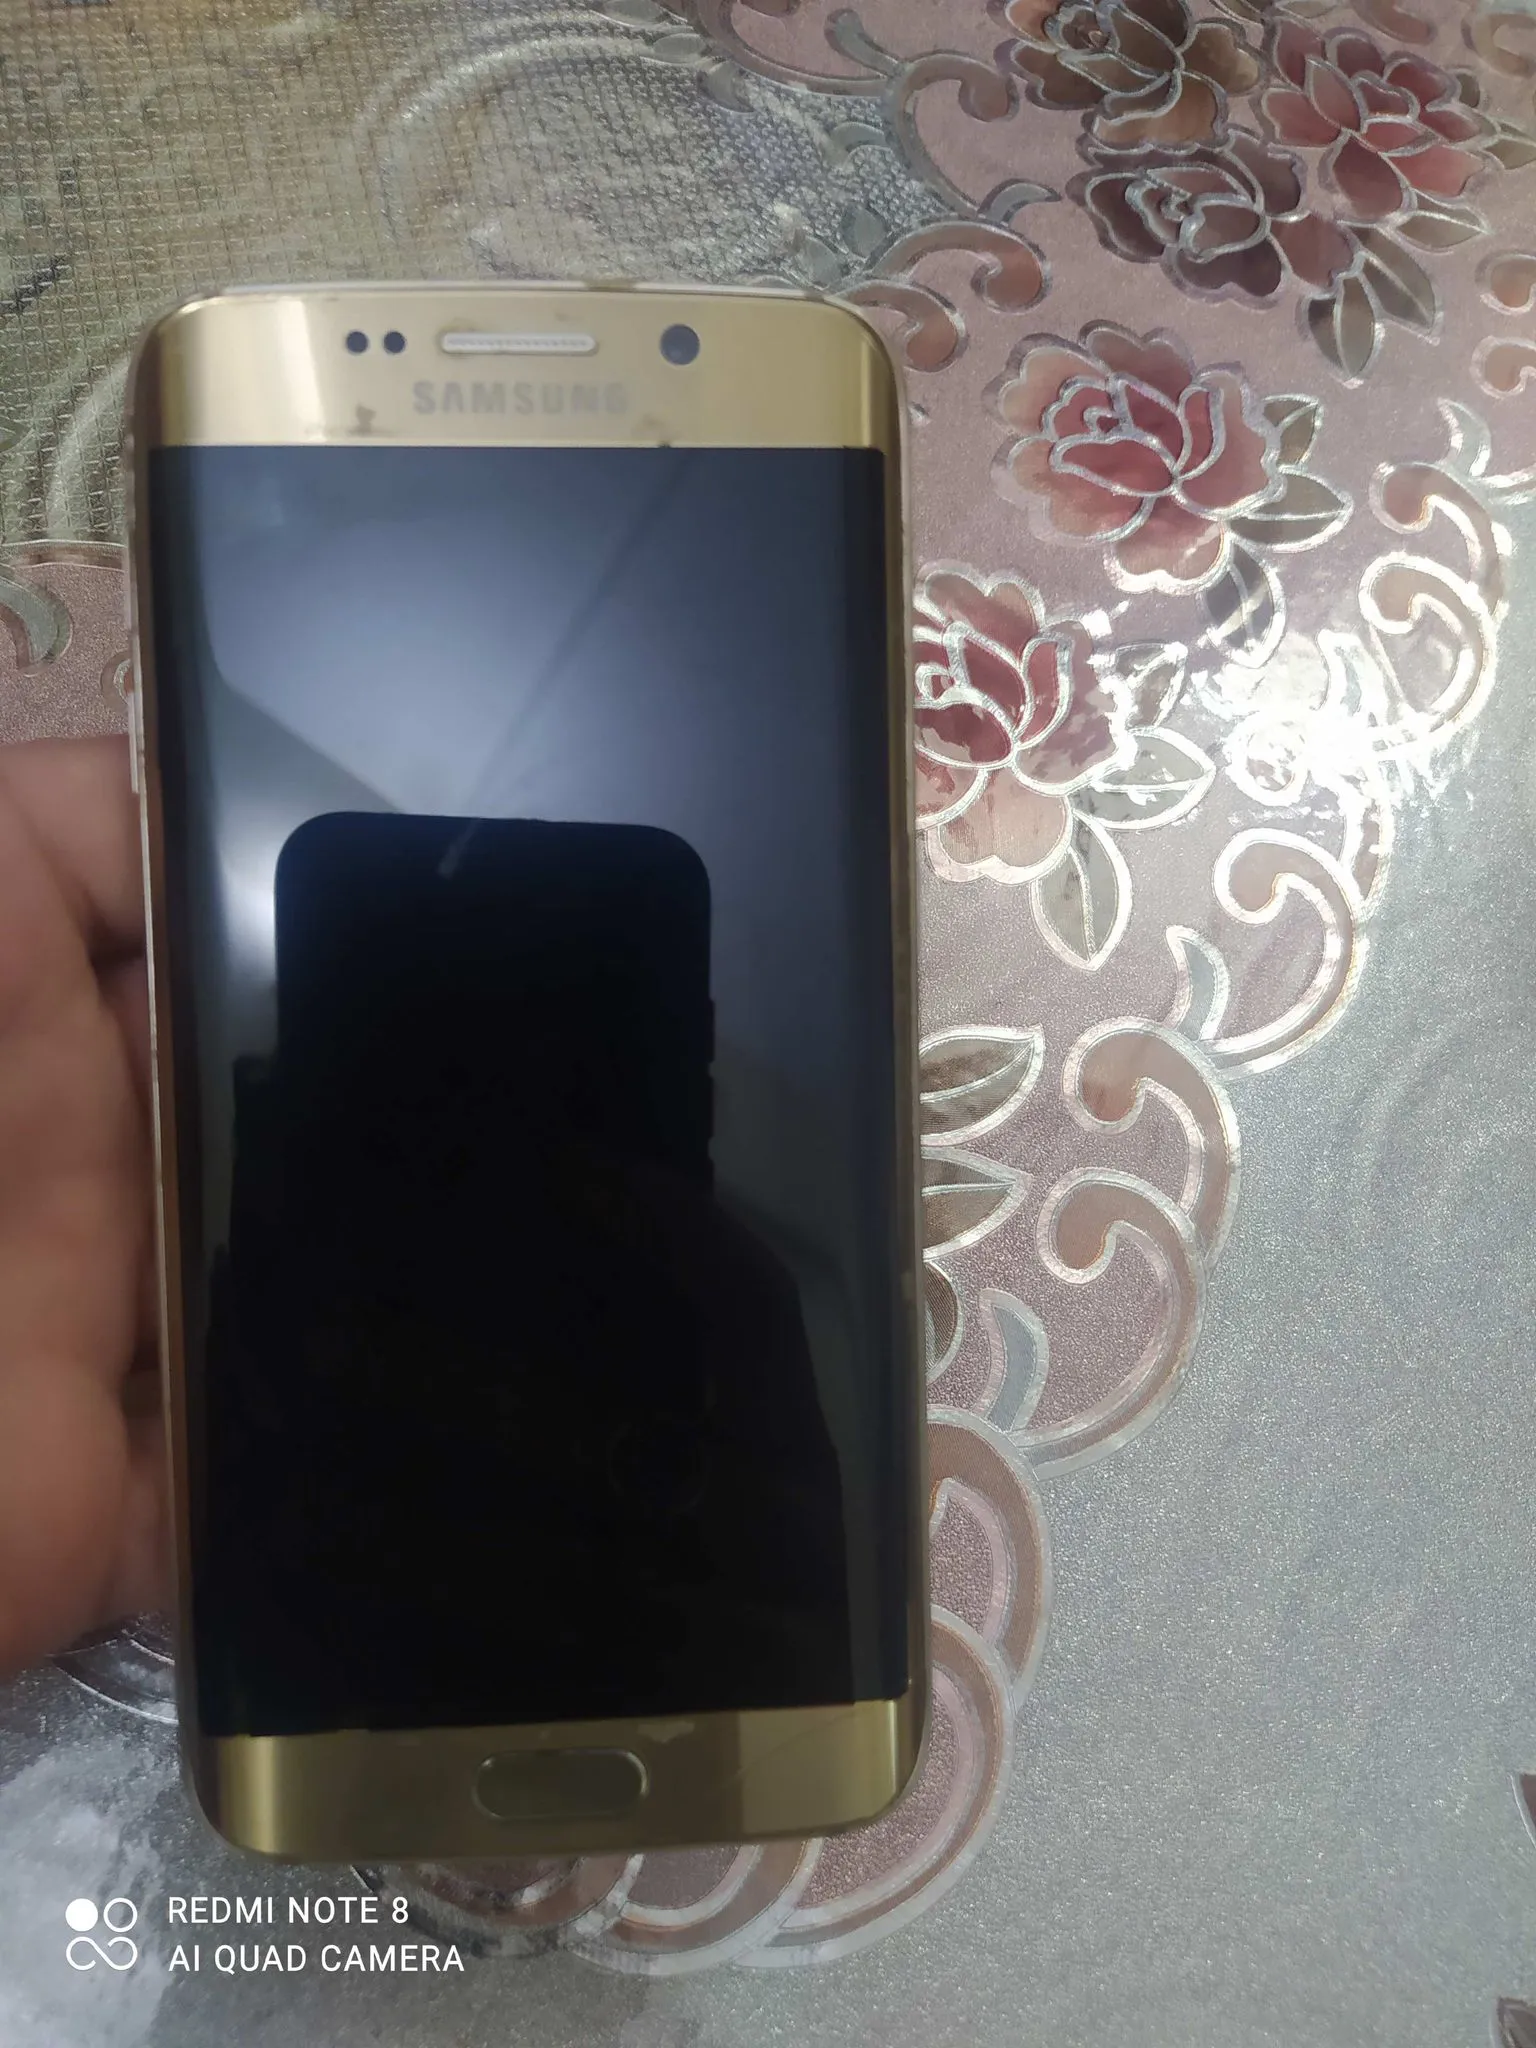 Samsung Galaxy s6edge (golden colour) - photo 1